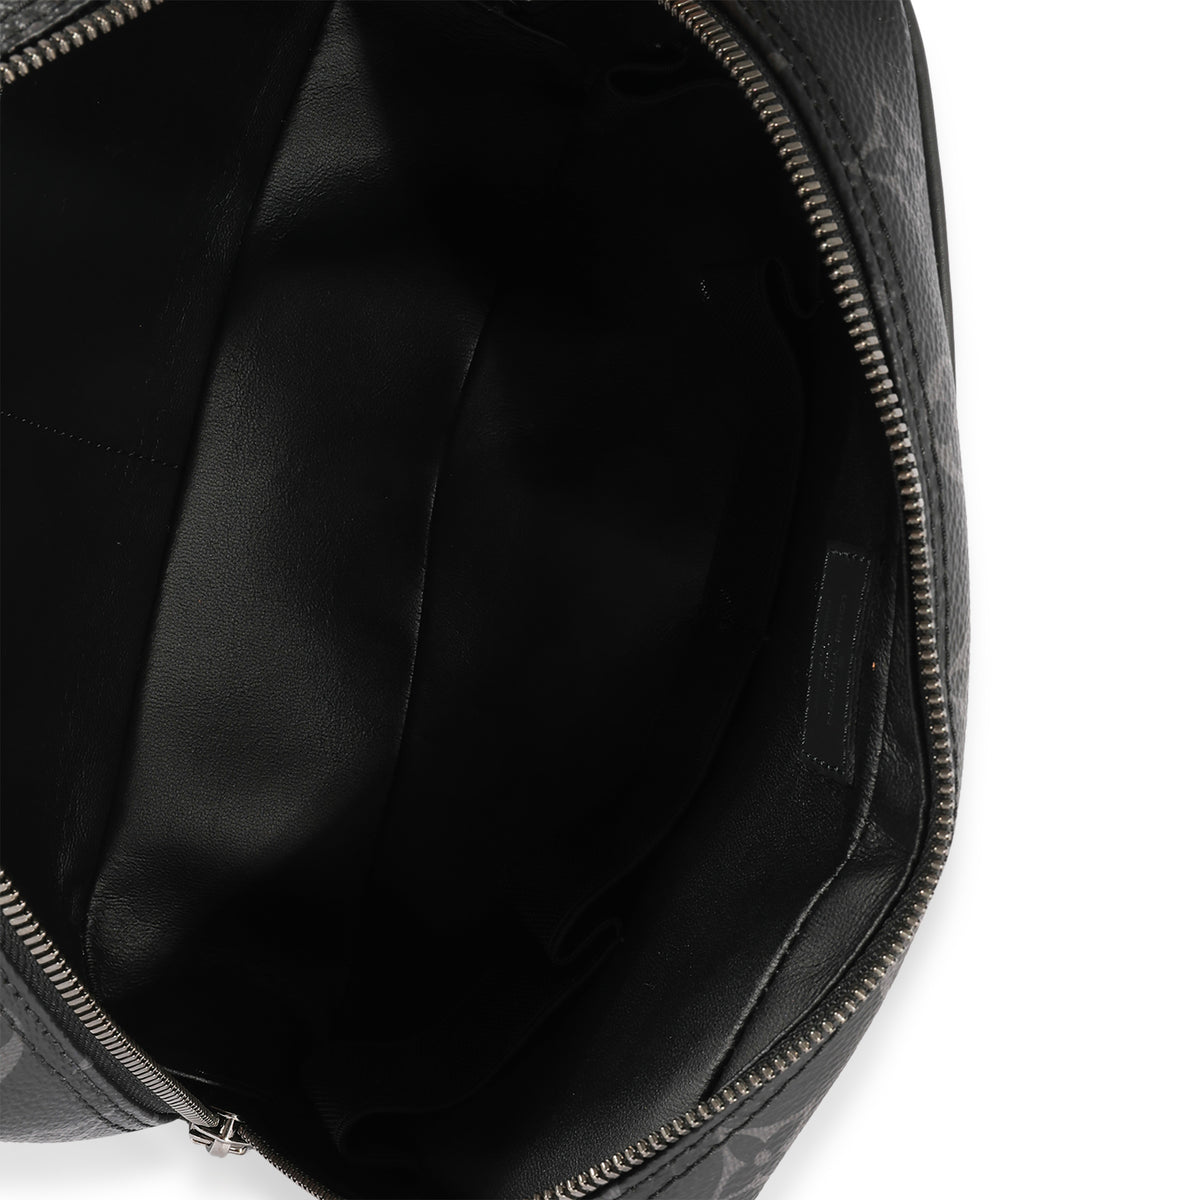 Louis Vuitton Toilet GM Monogram Eclipse Pouch Bag - DDH